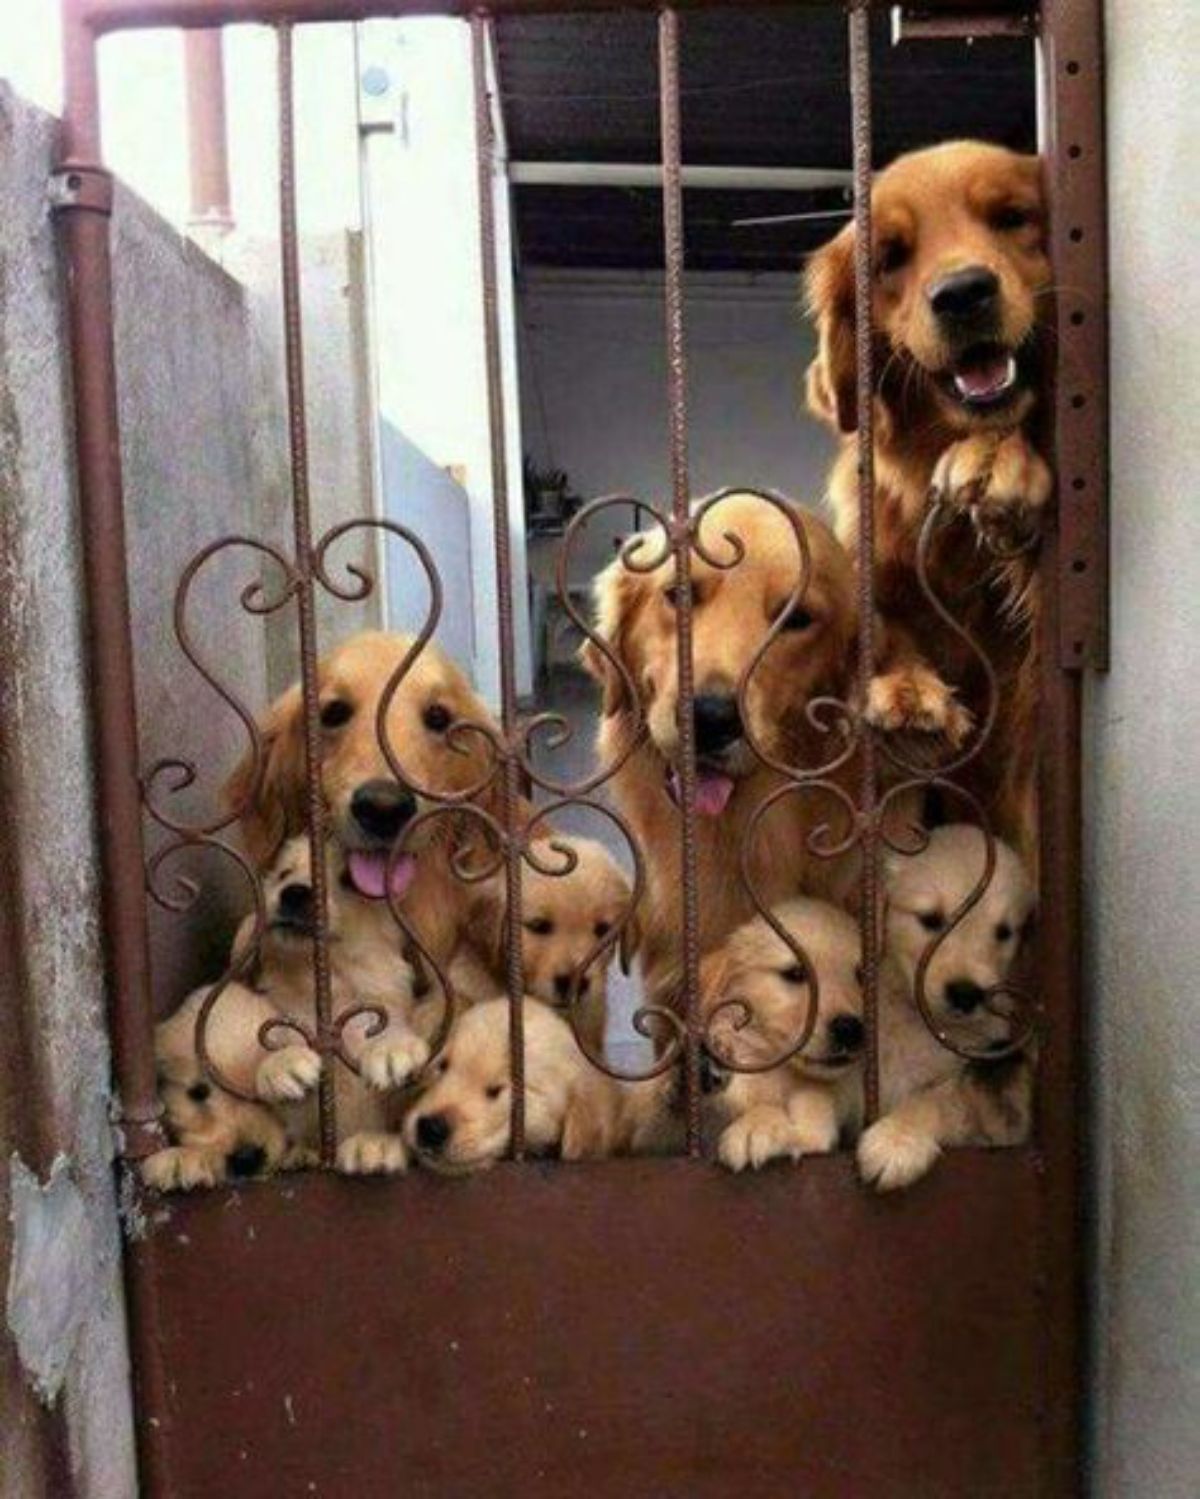 3 adult golden retrievers and a bunch of golden retriever puppies peeking through a red gate